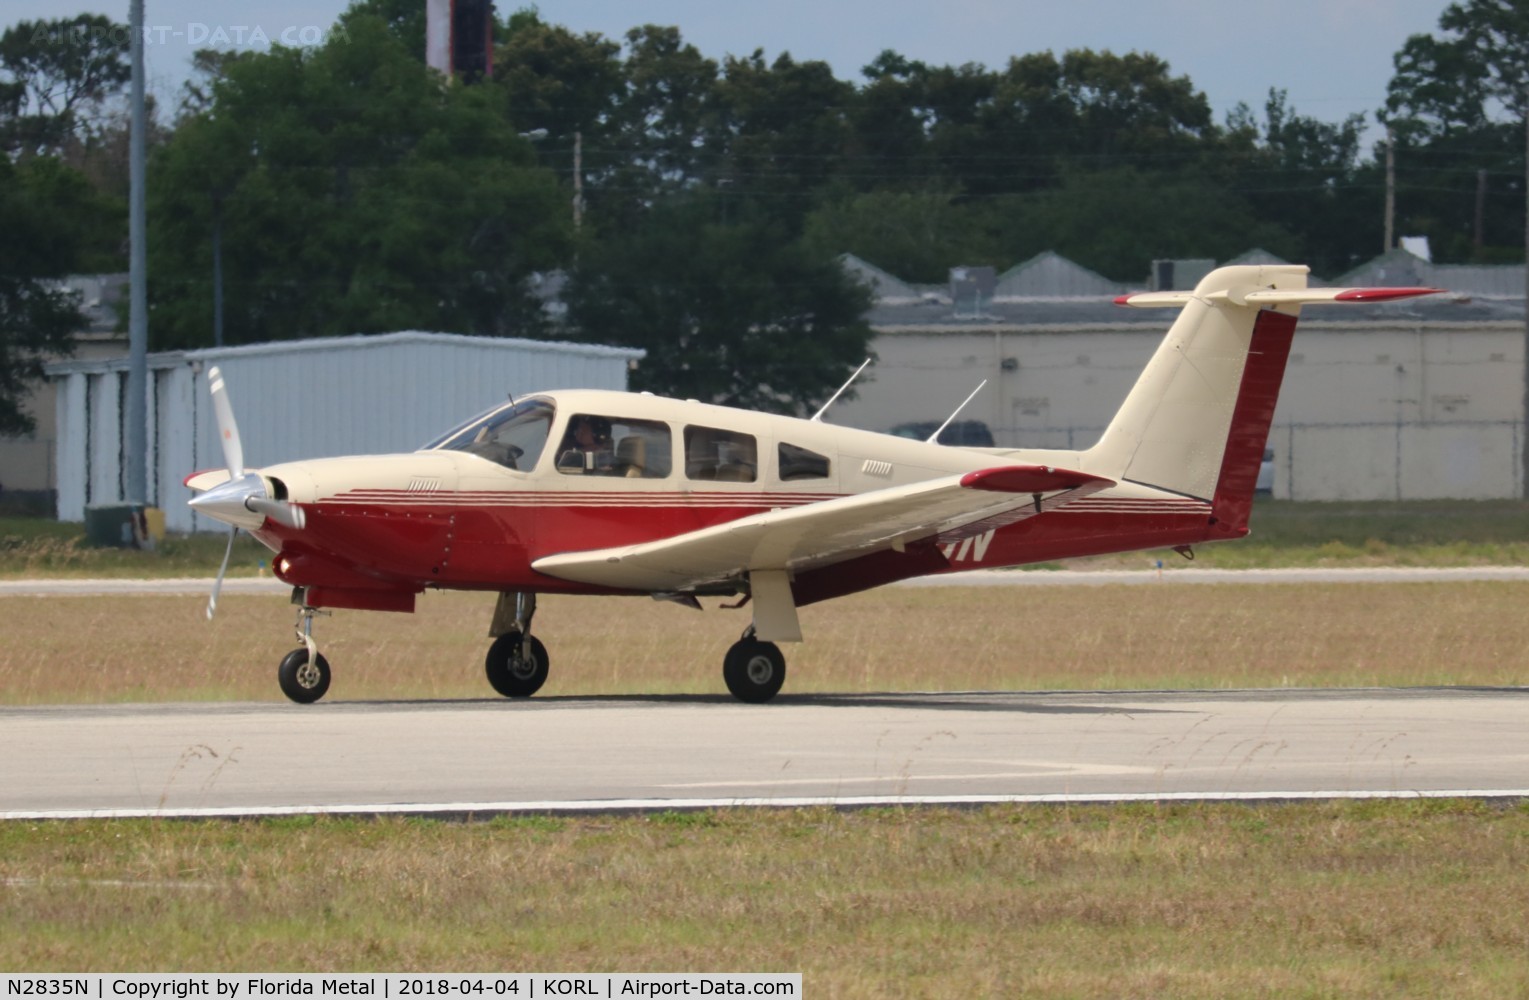 N2835N, 1979 Piper PA-28RT-201T Arrow IV C/N 28R-7931216, PA-28RT-201T